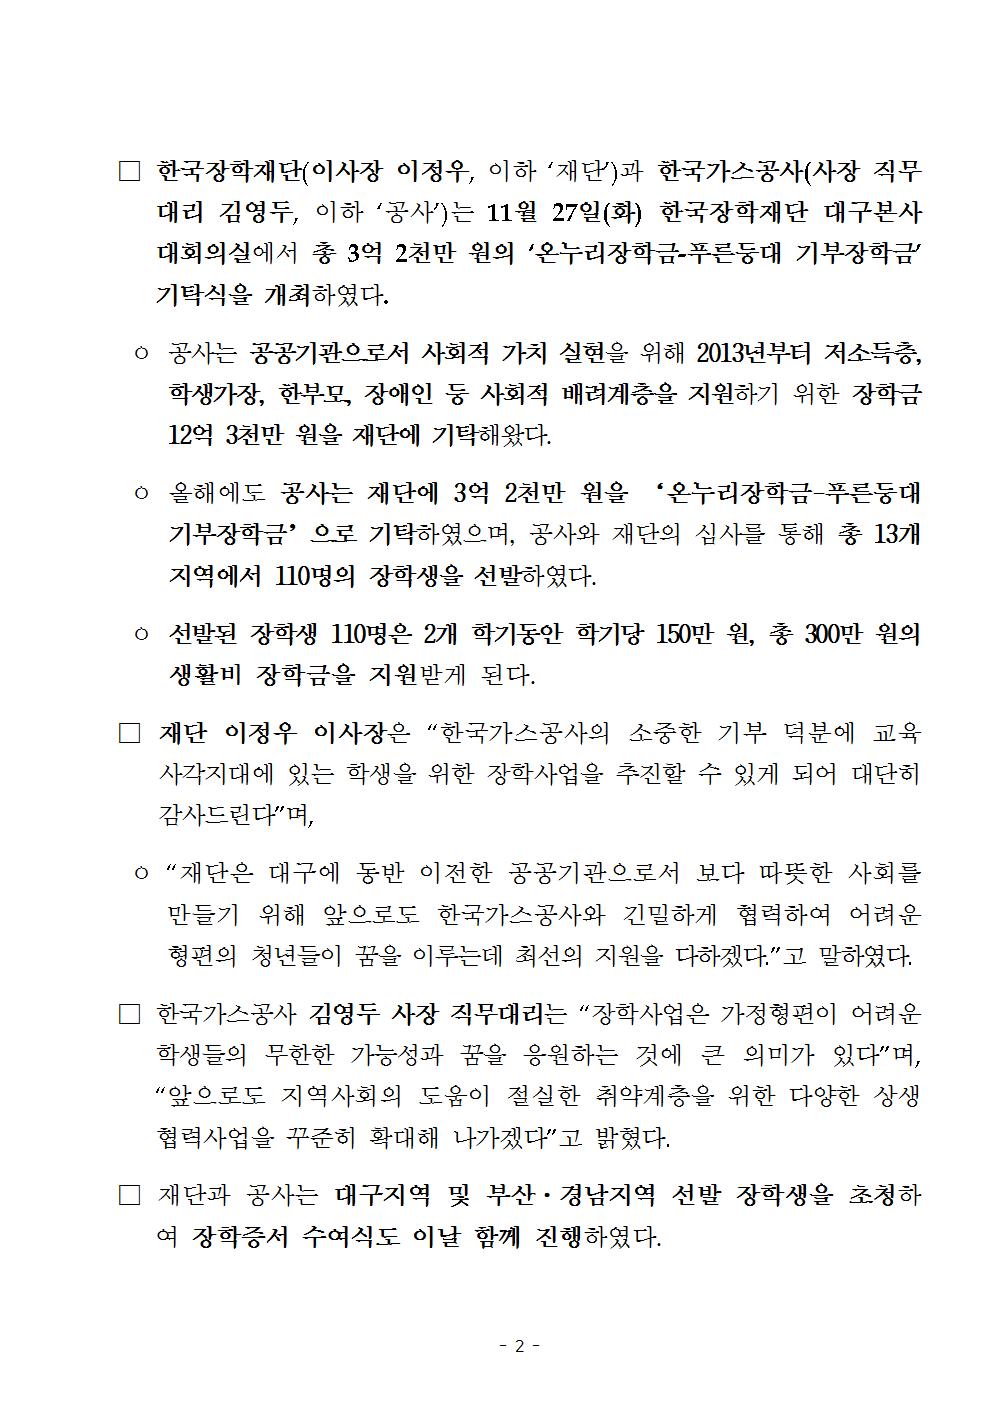 11-27(화)[보도자료] (한국장학재단-한국가스공사) 푸른등대 기부장학금 기탁식 개최002.jpg